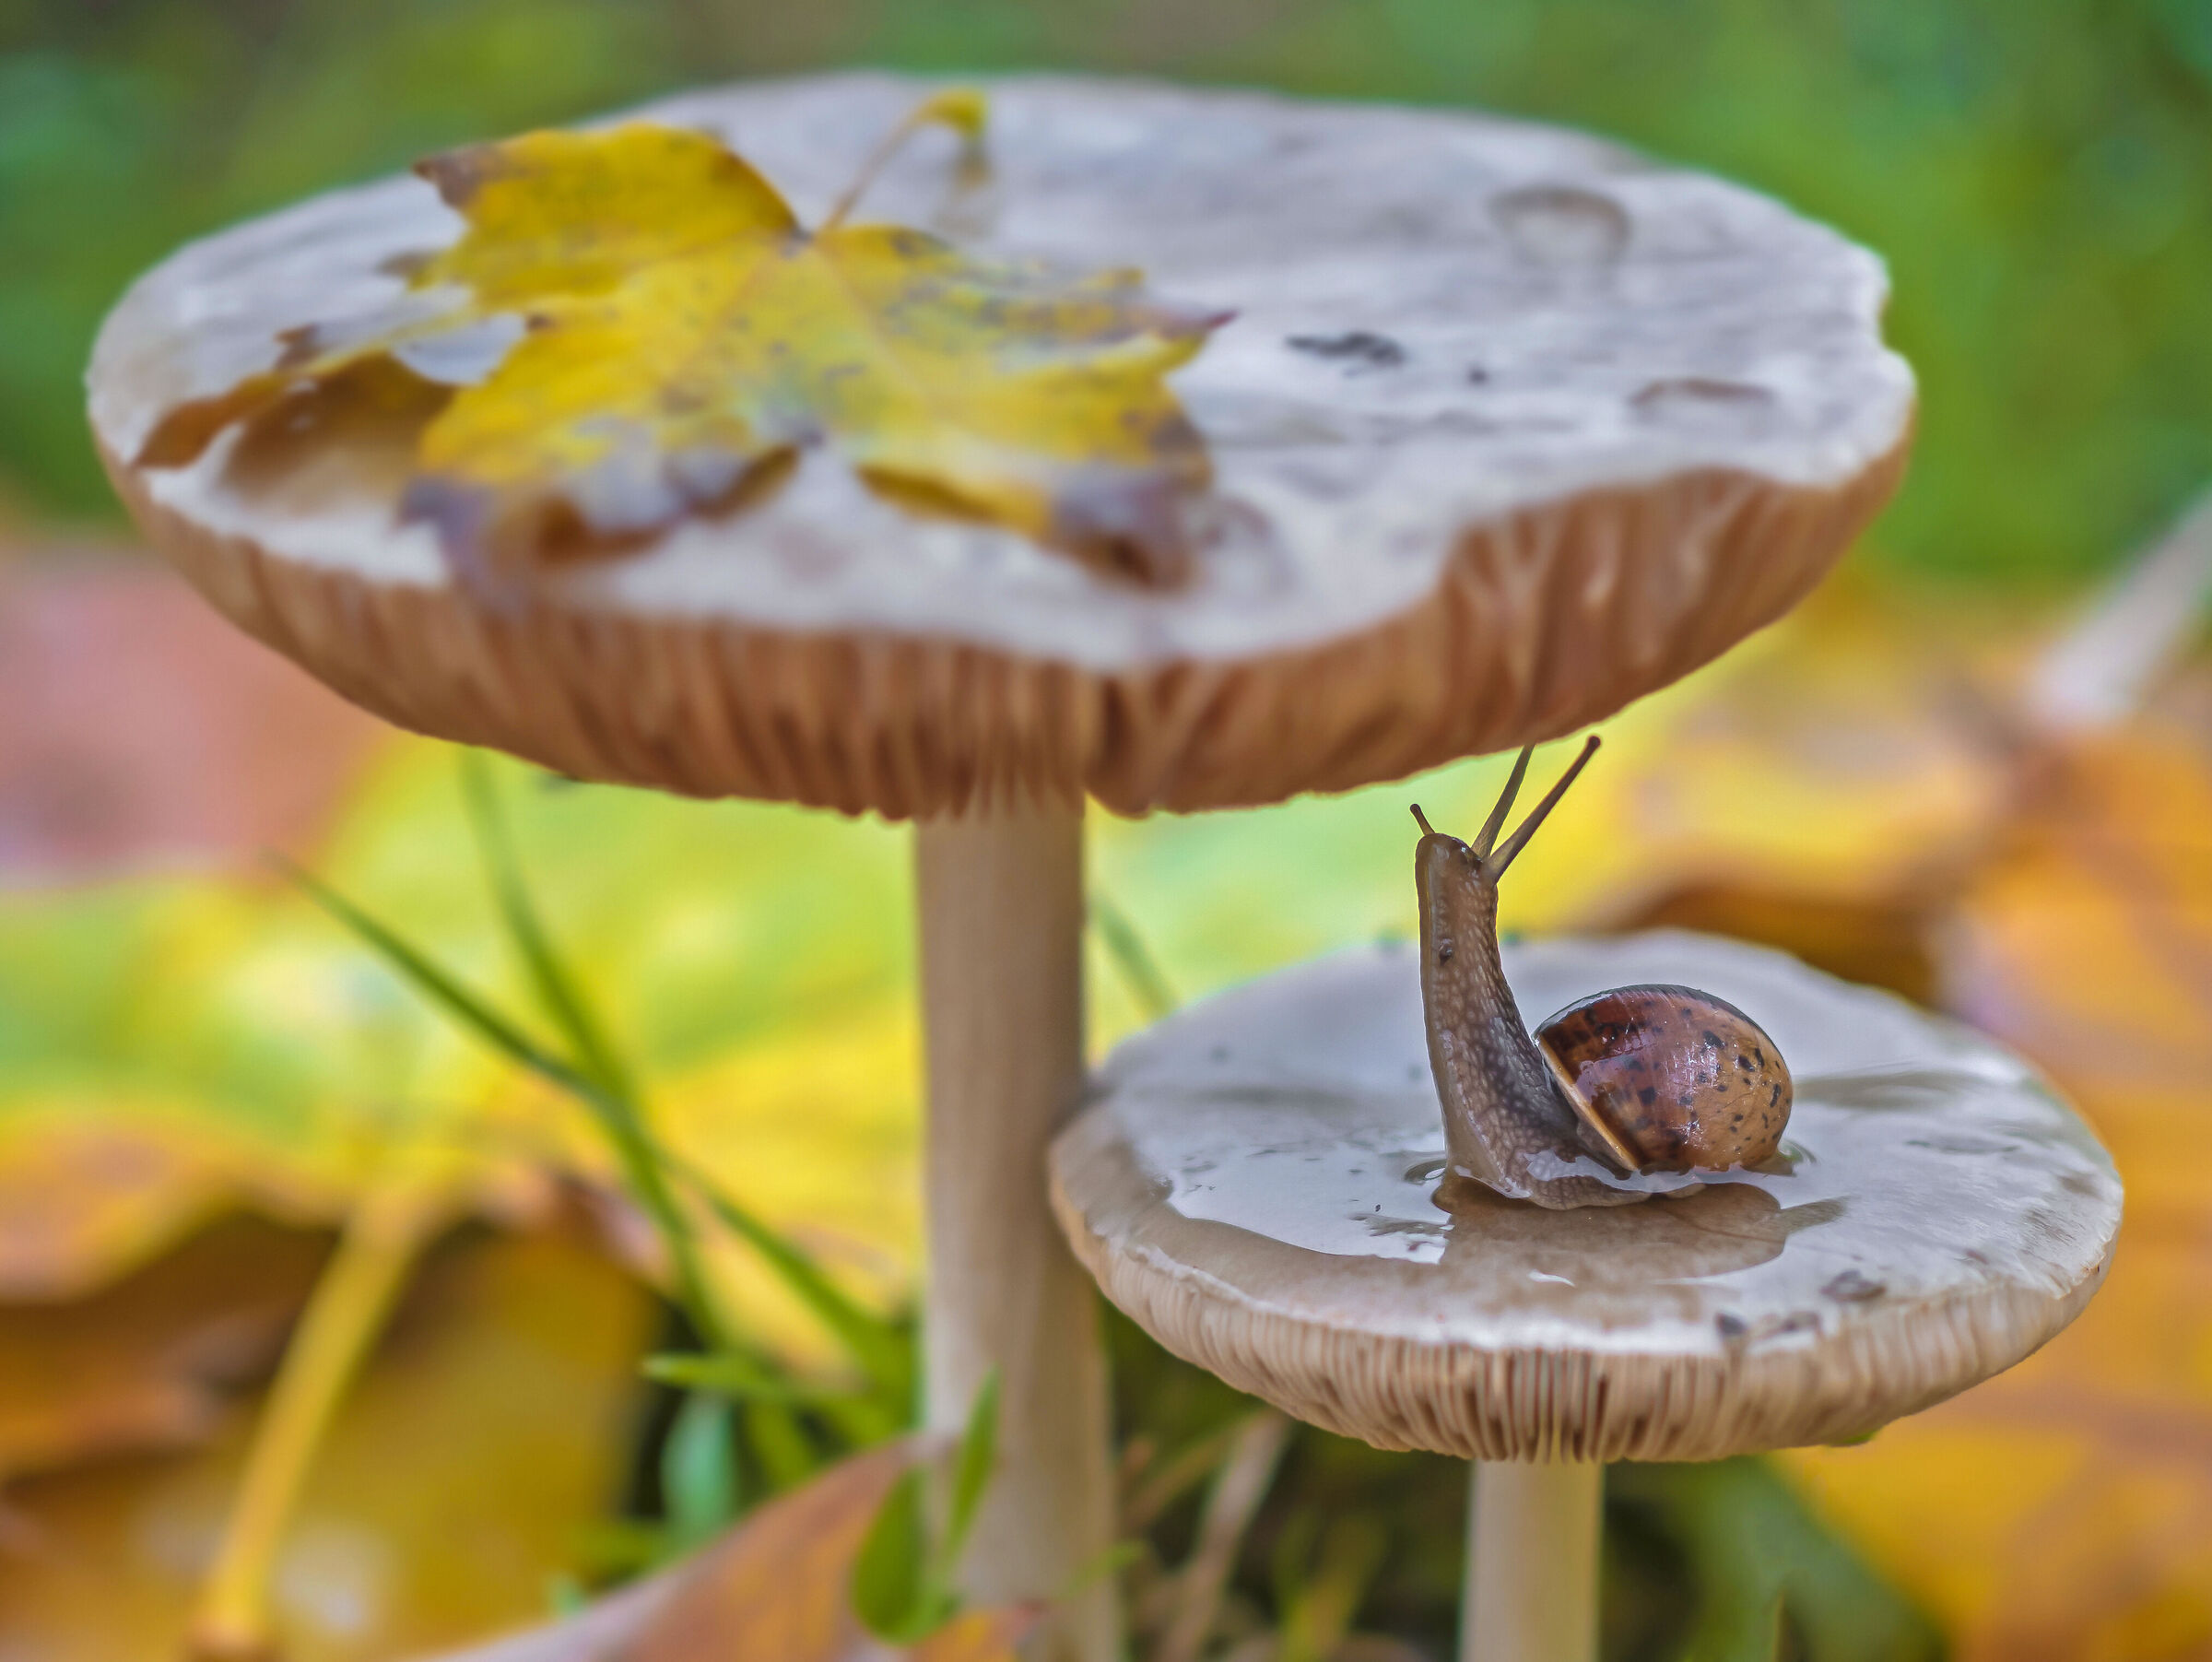 snail under a mushroom...